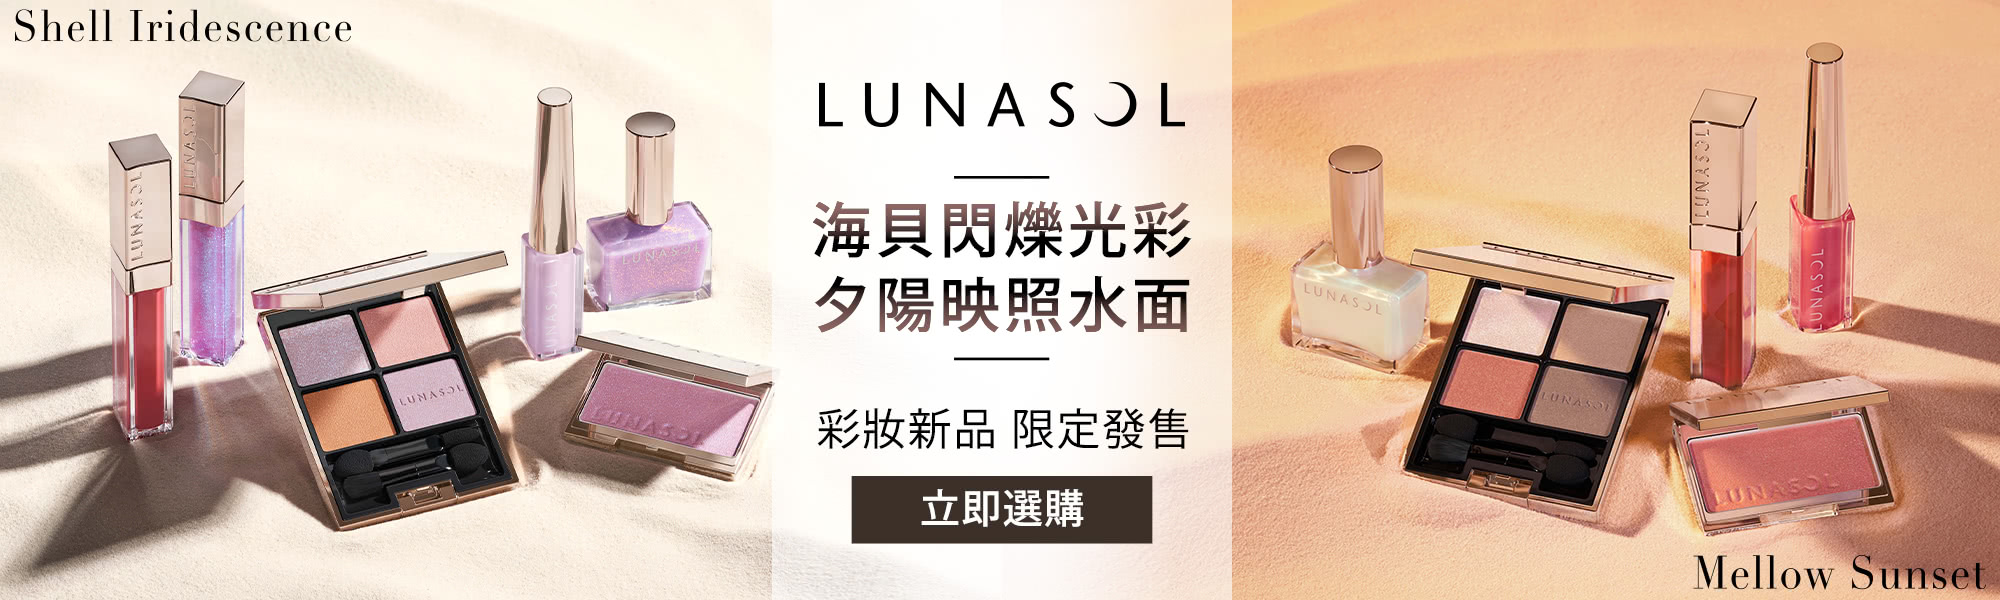 LUNASOL 彩妝新品 限定發售